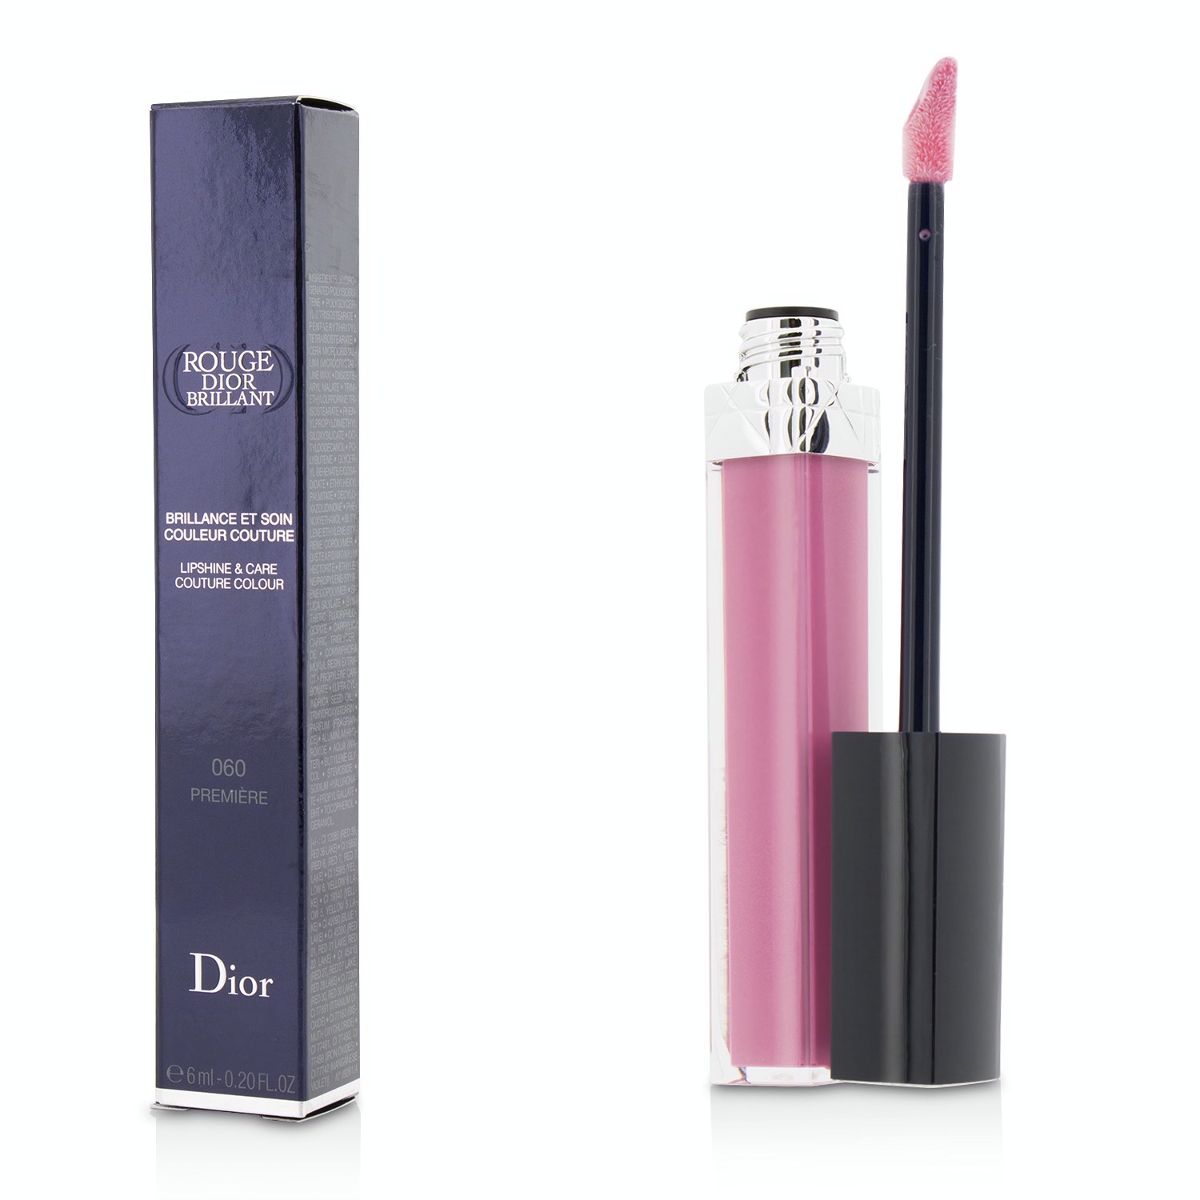 Rouge Dior Brillant Lipgloss - # 060 Premiere Christian Dior Image